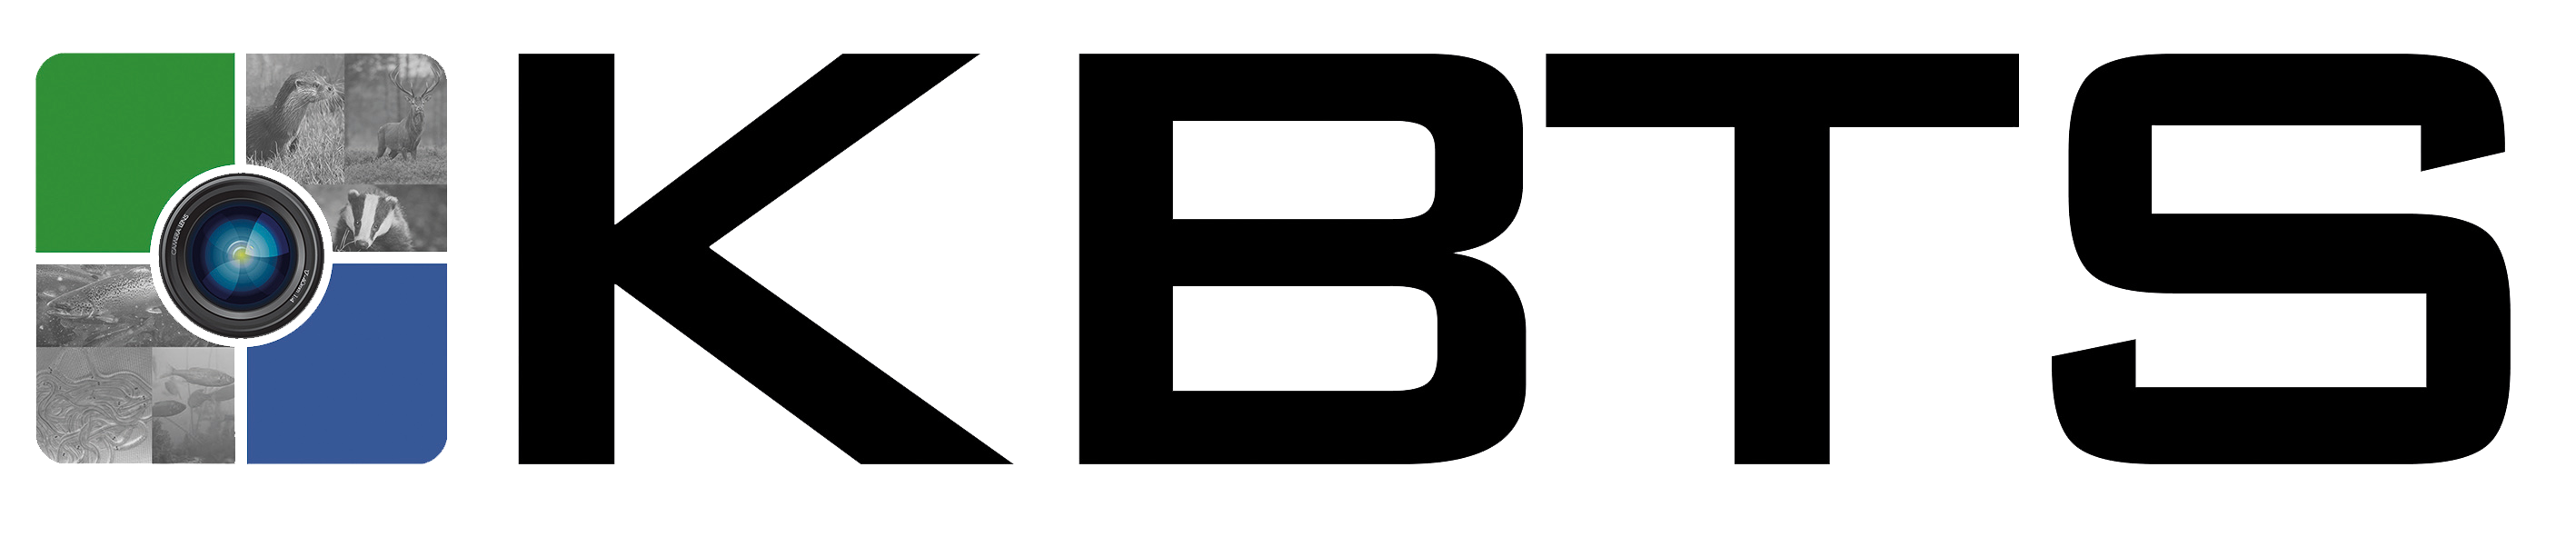 Kbts logo